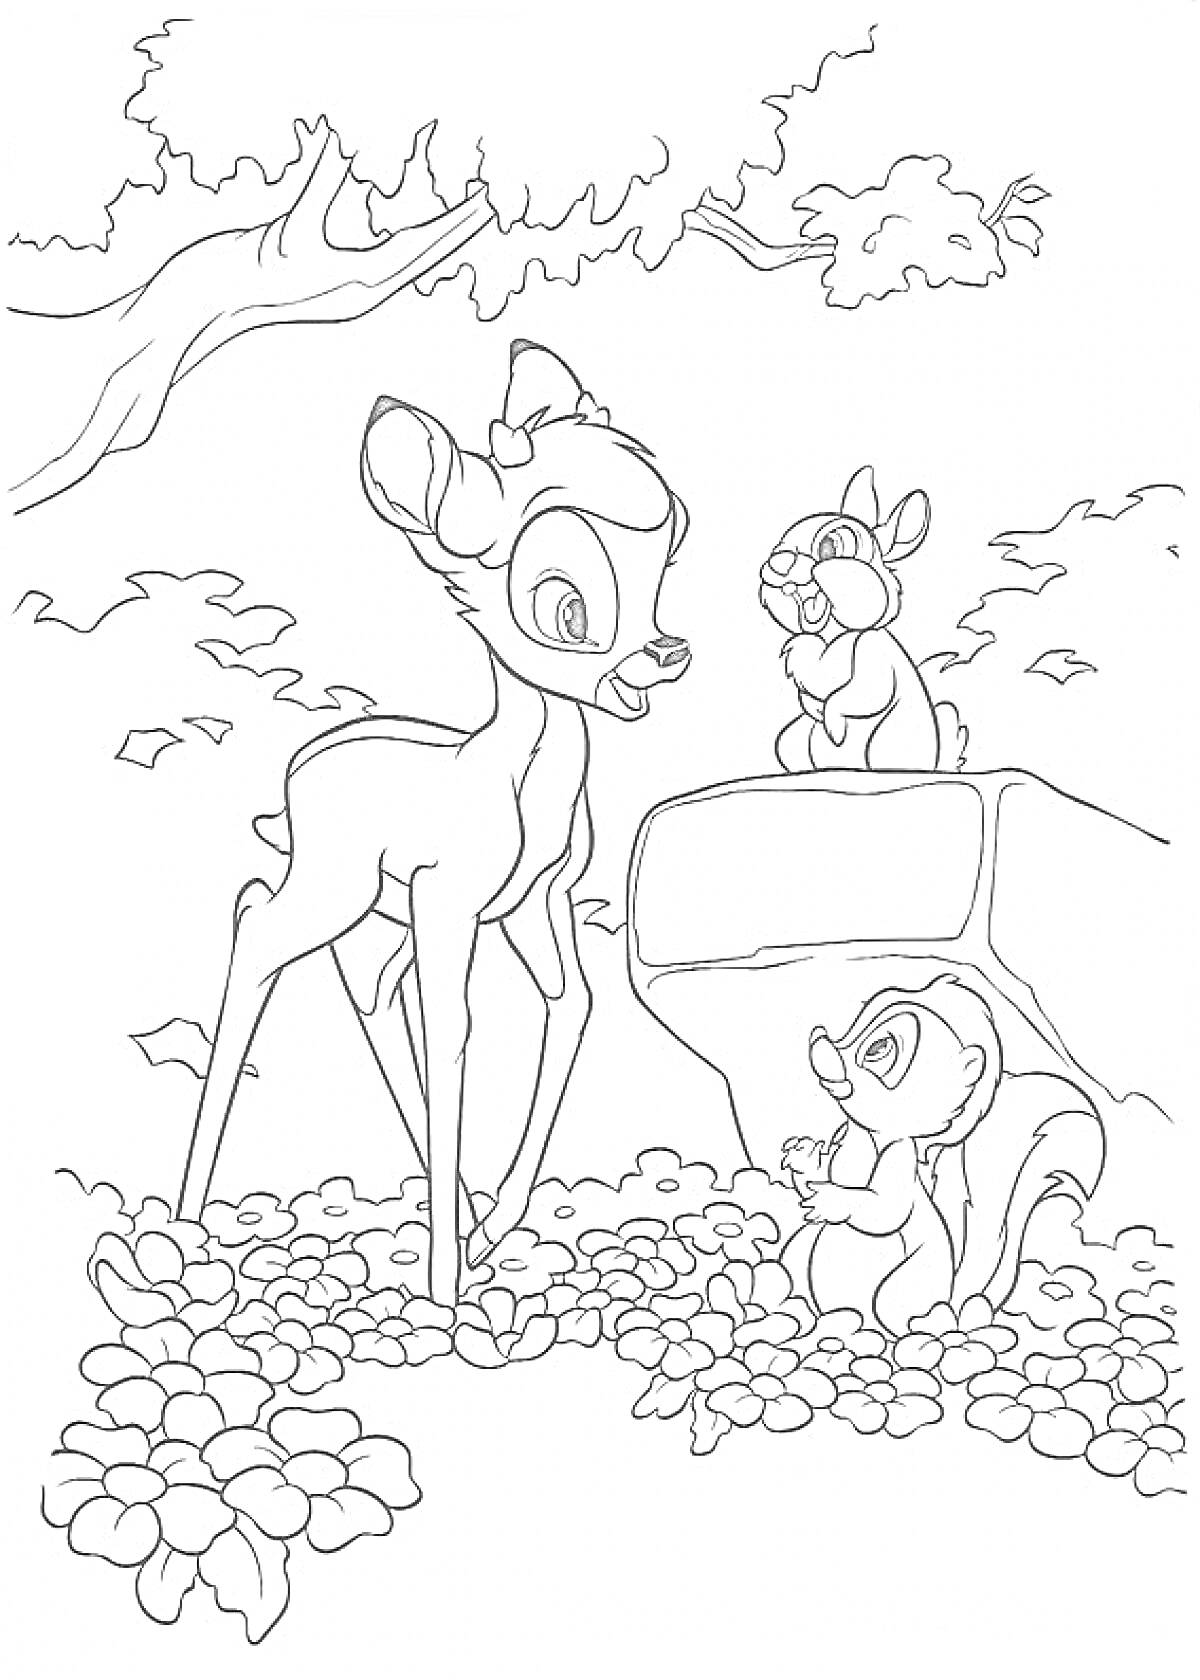 Раскраска Бэмби разговаривает с кроликом и скунсом на фоне леса под деревом